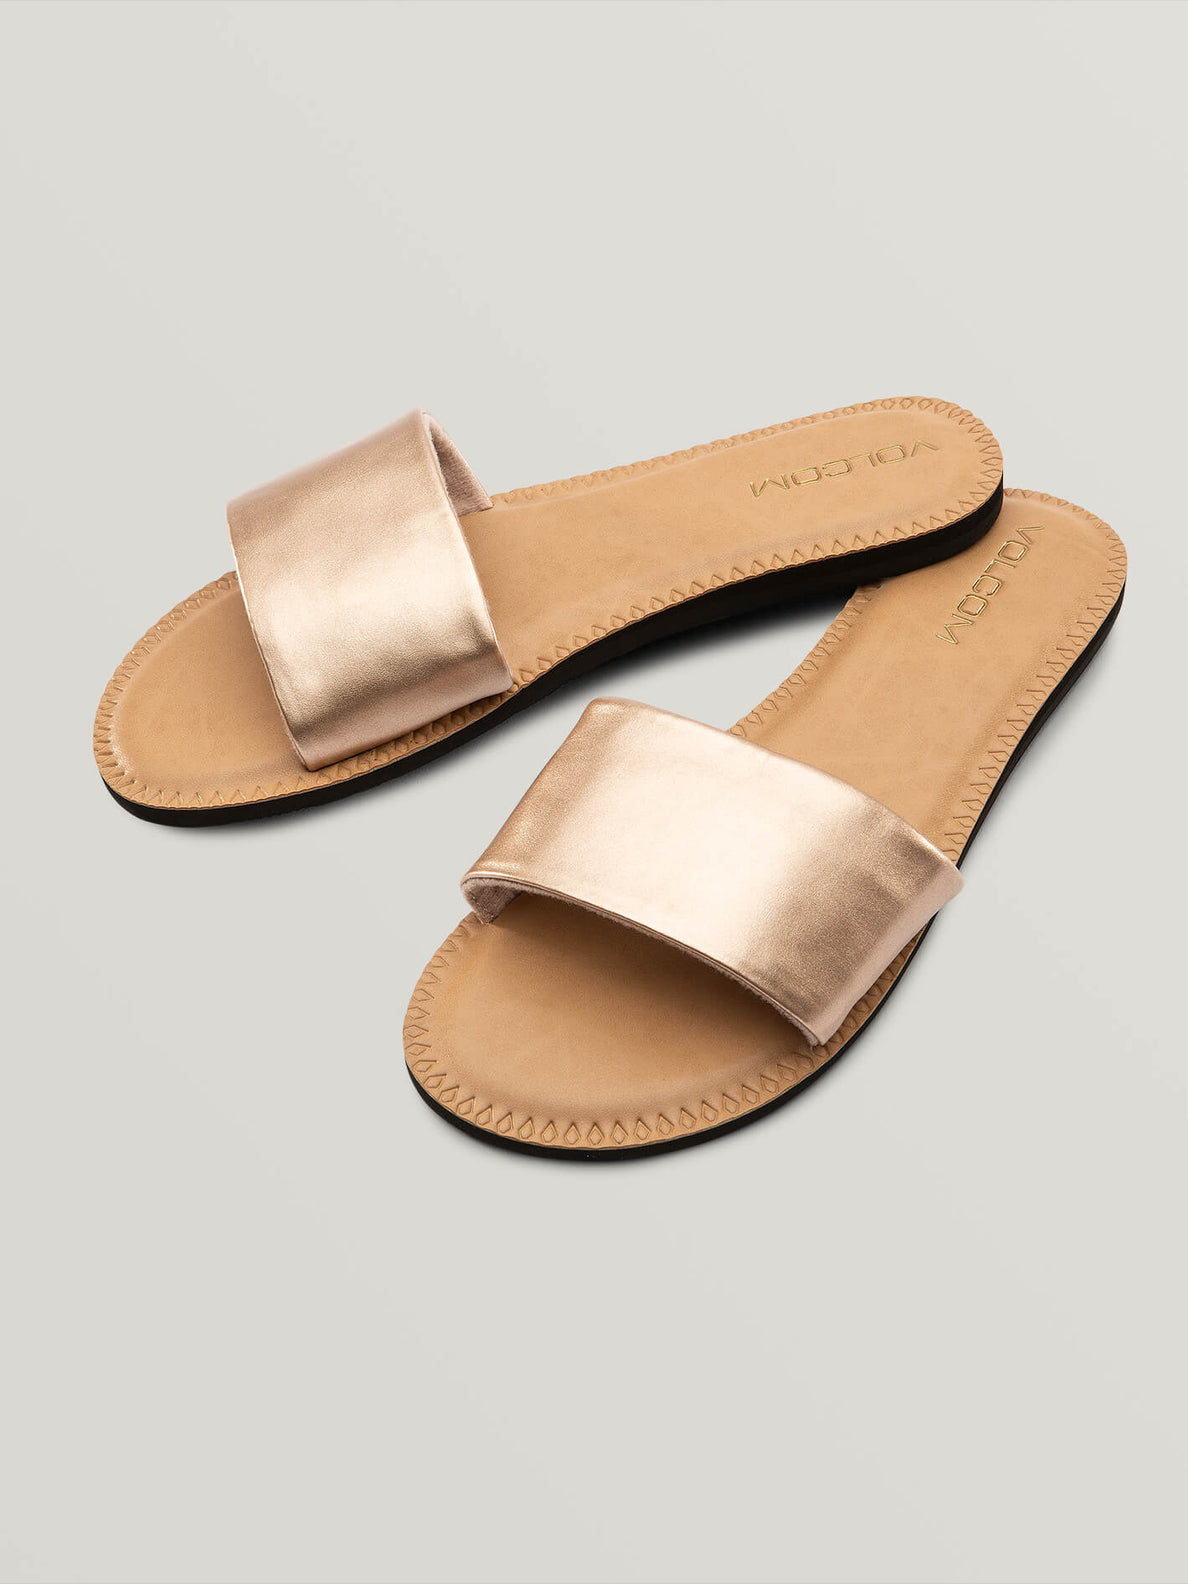 rose gold slide sandals